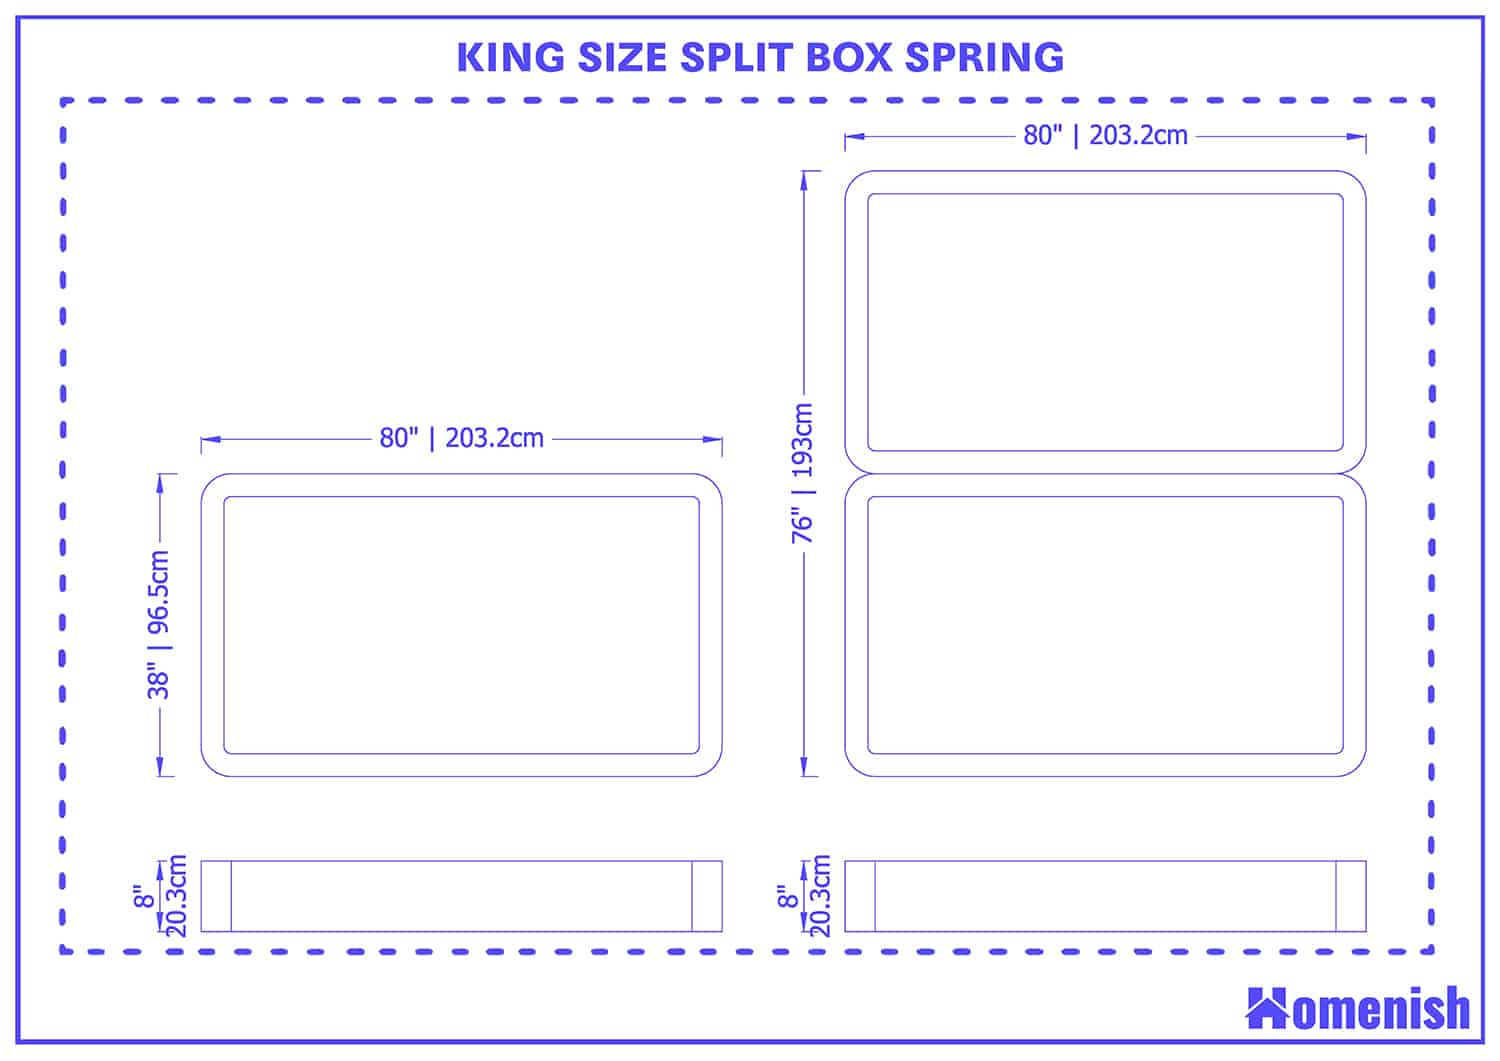 King size split box spring